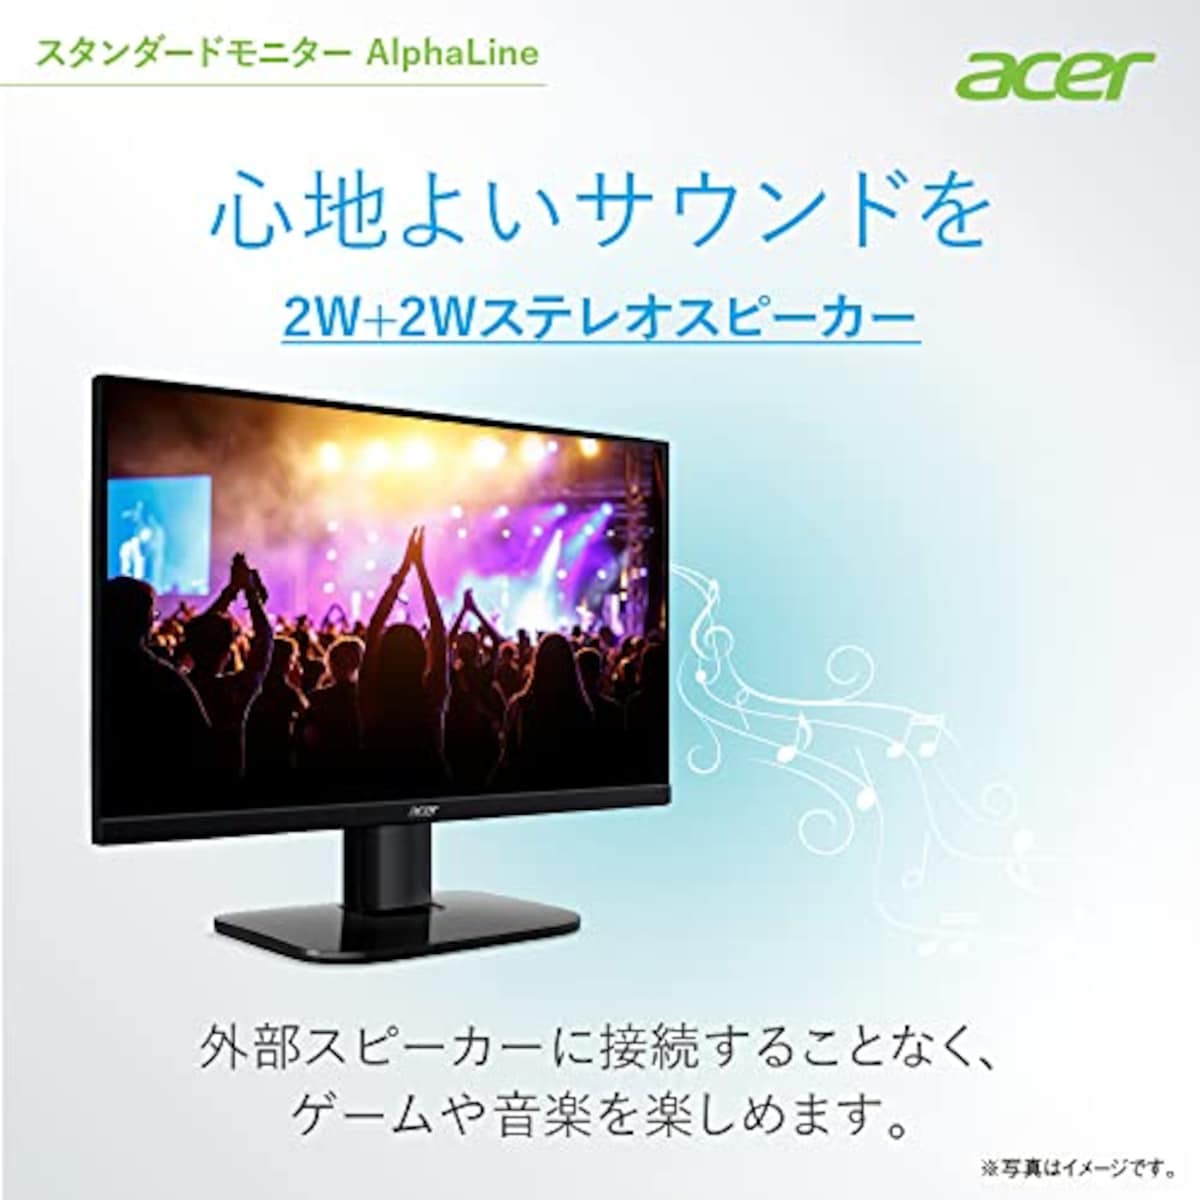  日本エイサー 【Amazon.co.jp限定】Acer モニター 27インチ フルHD VA 非光沢100Hz 1ms HDMI ミニD-Sub15 VESAマウント対応 スピーカー内蔵 AMD FreeSync KA272Hbmix画像6 